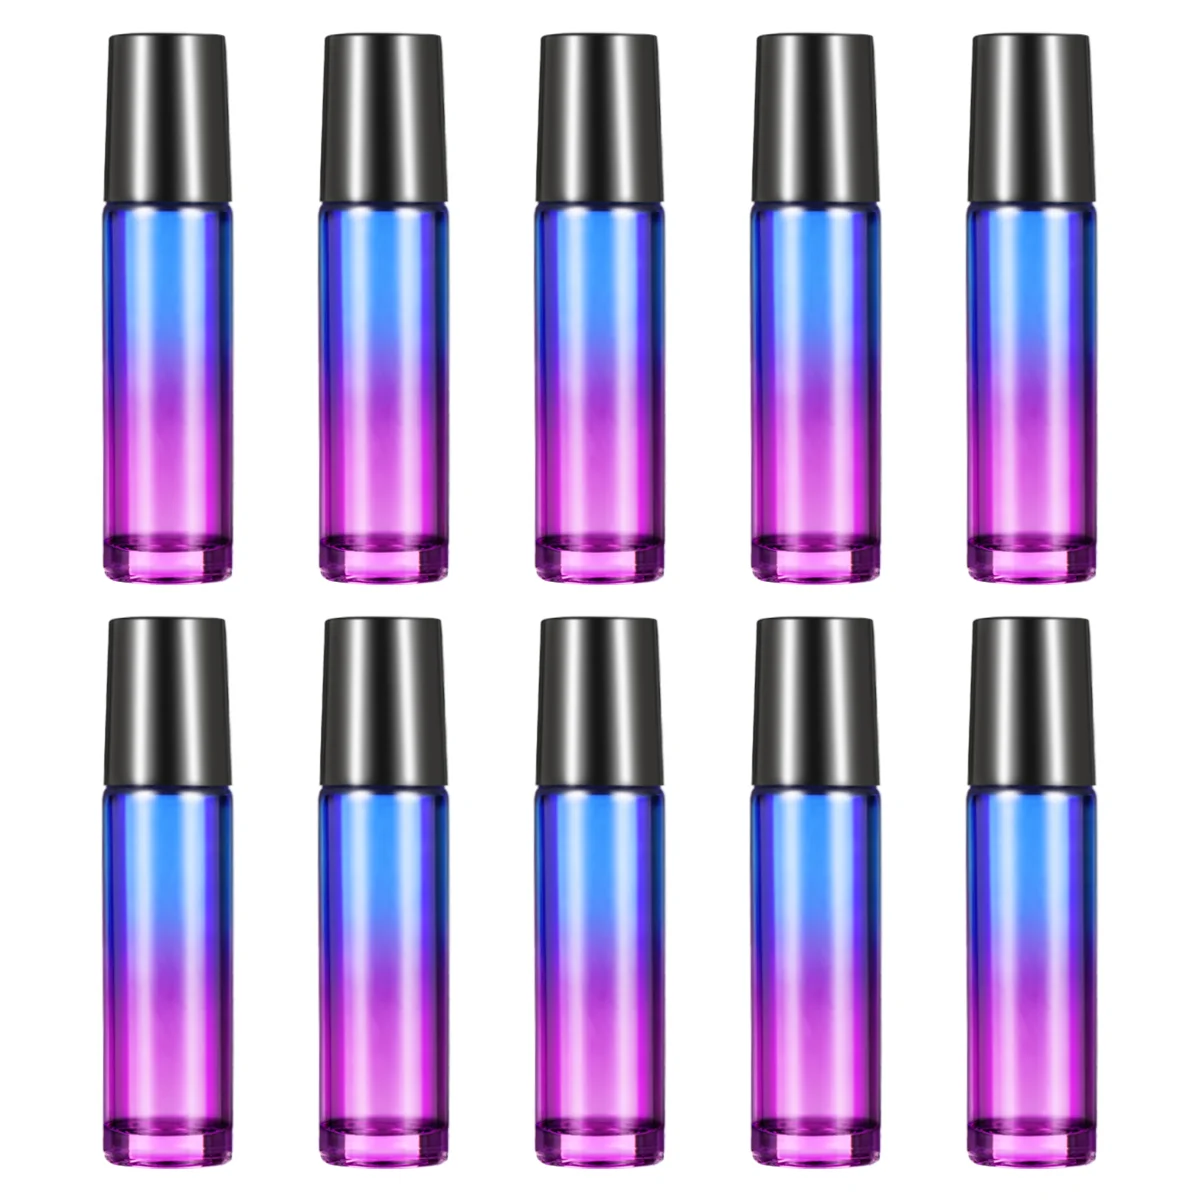 

ROSENICE 10pcs 10ML Glass Roller Balls Gradient Roller Bottles with 2pcs Opener Pry Tool for Essential Oils Perfume Bottle